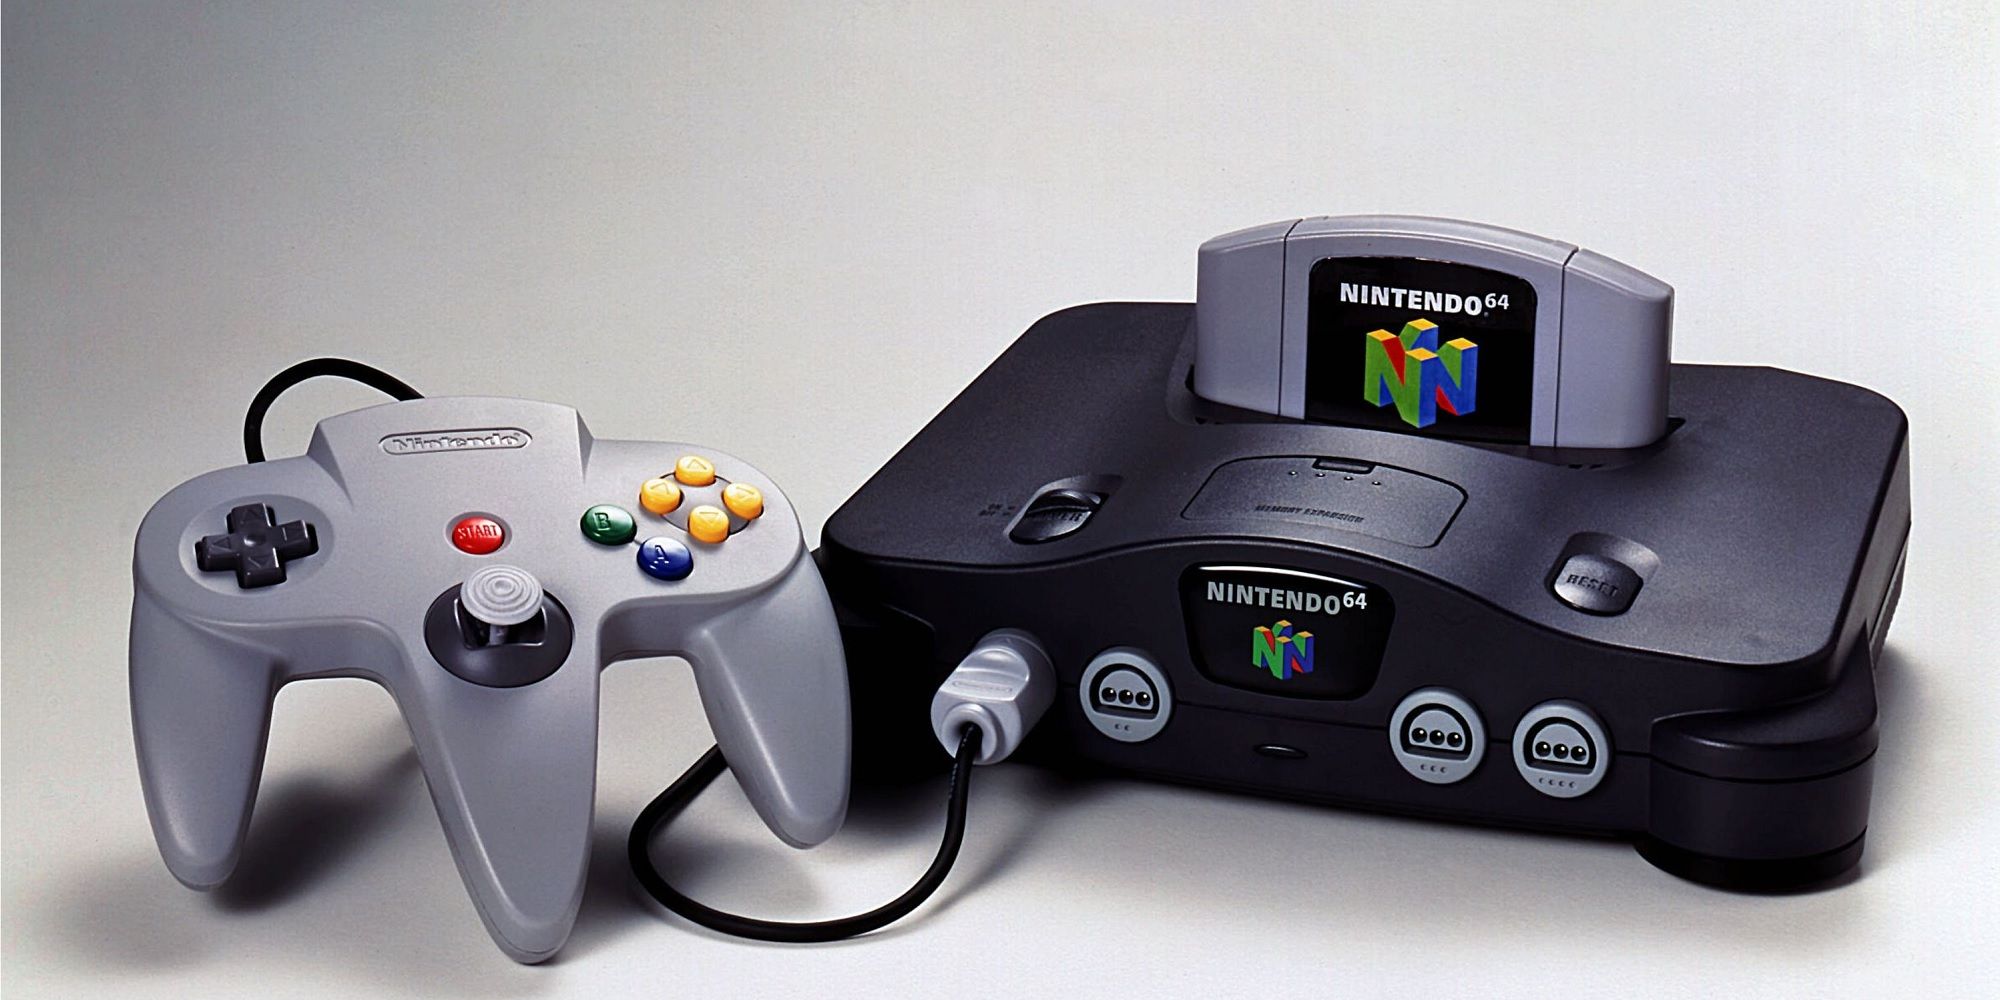 A Nintendo 64 console